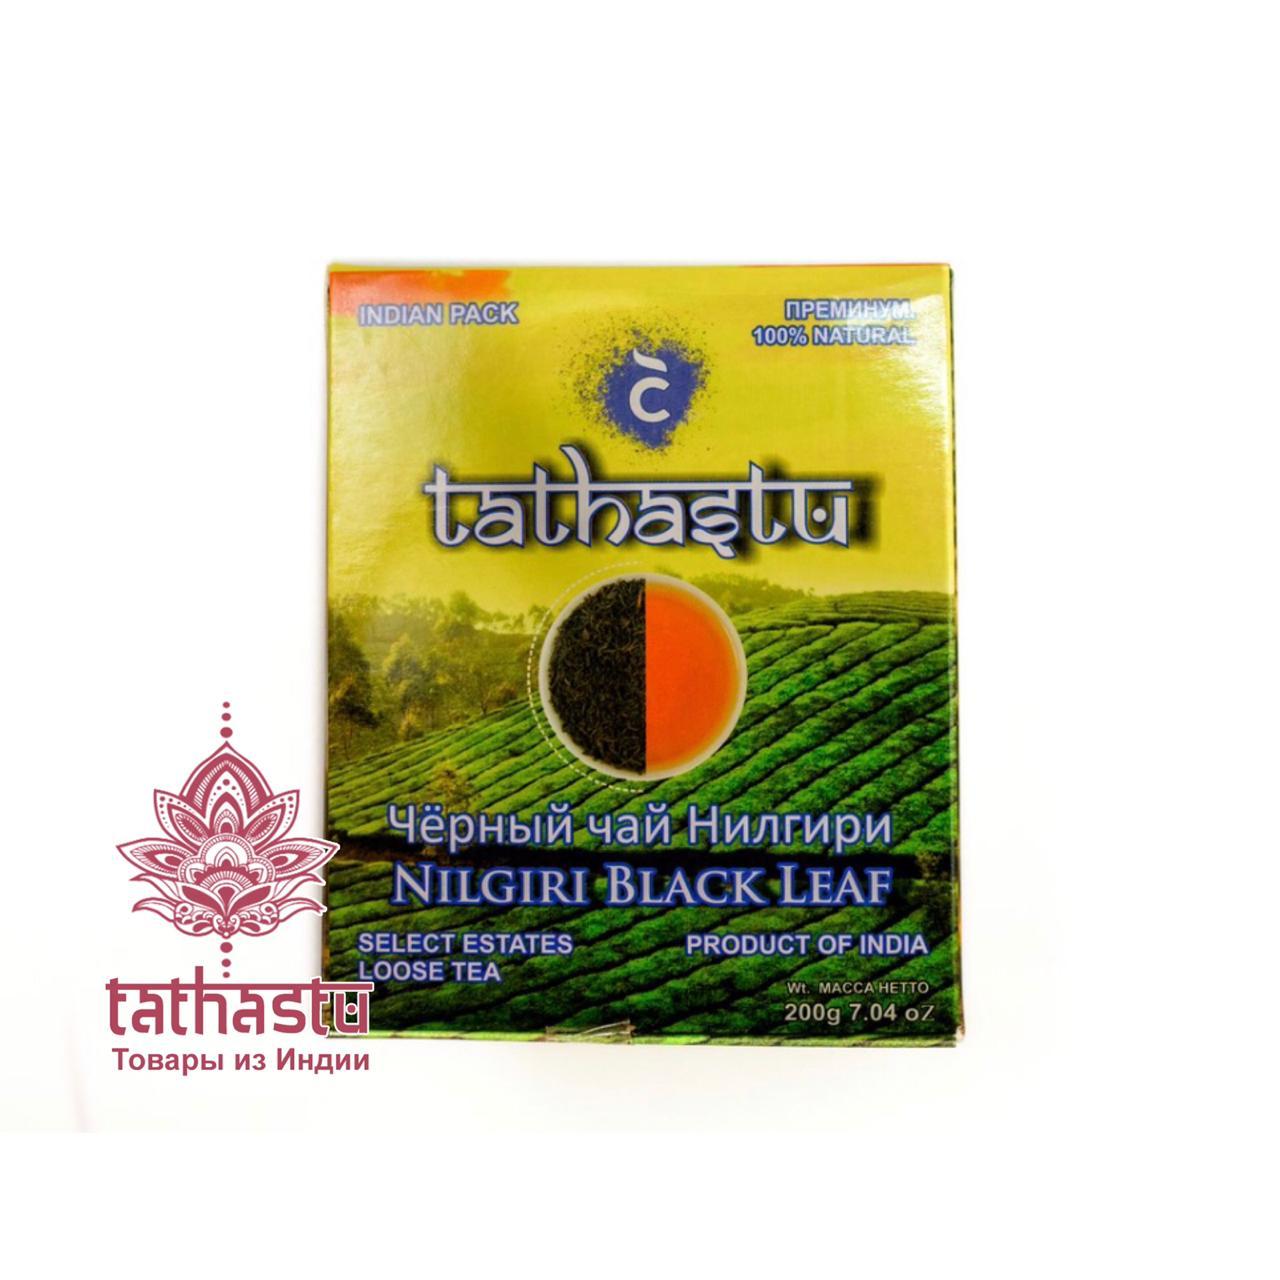 Tathastu нилгири чай. Tathastu товары и индии